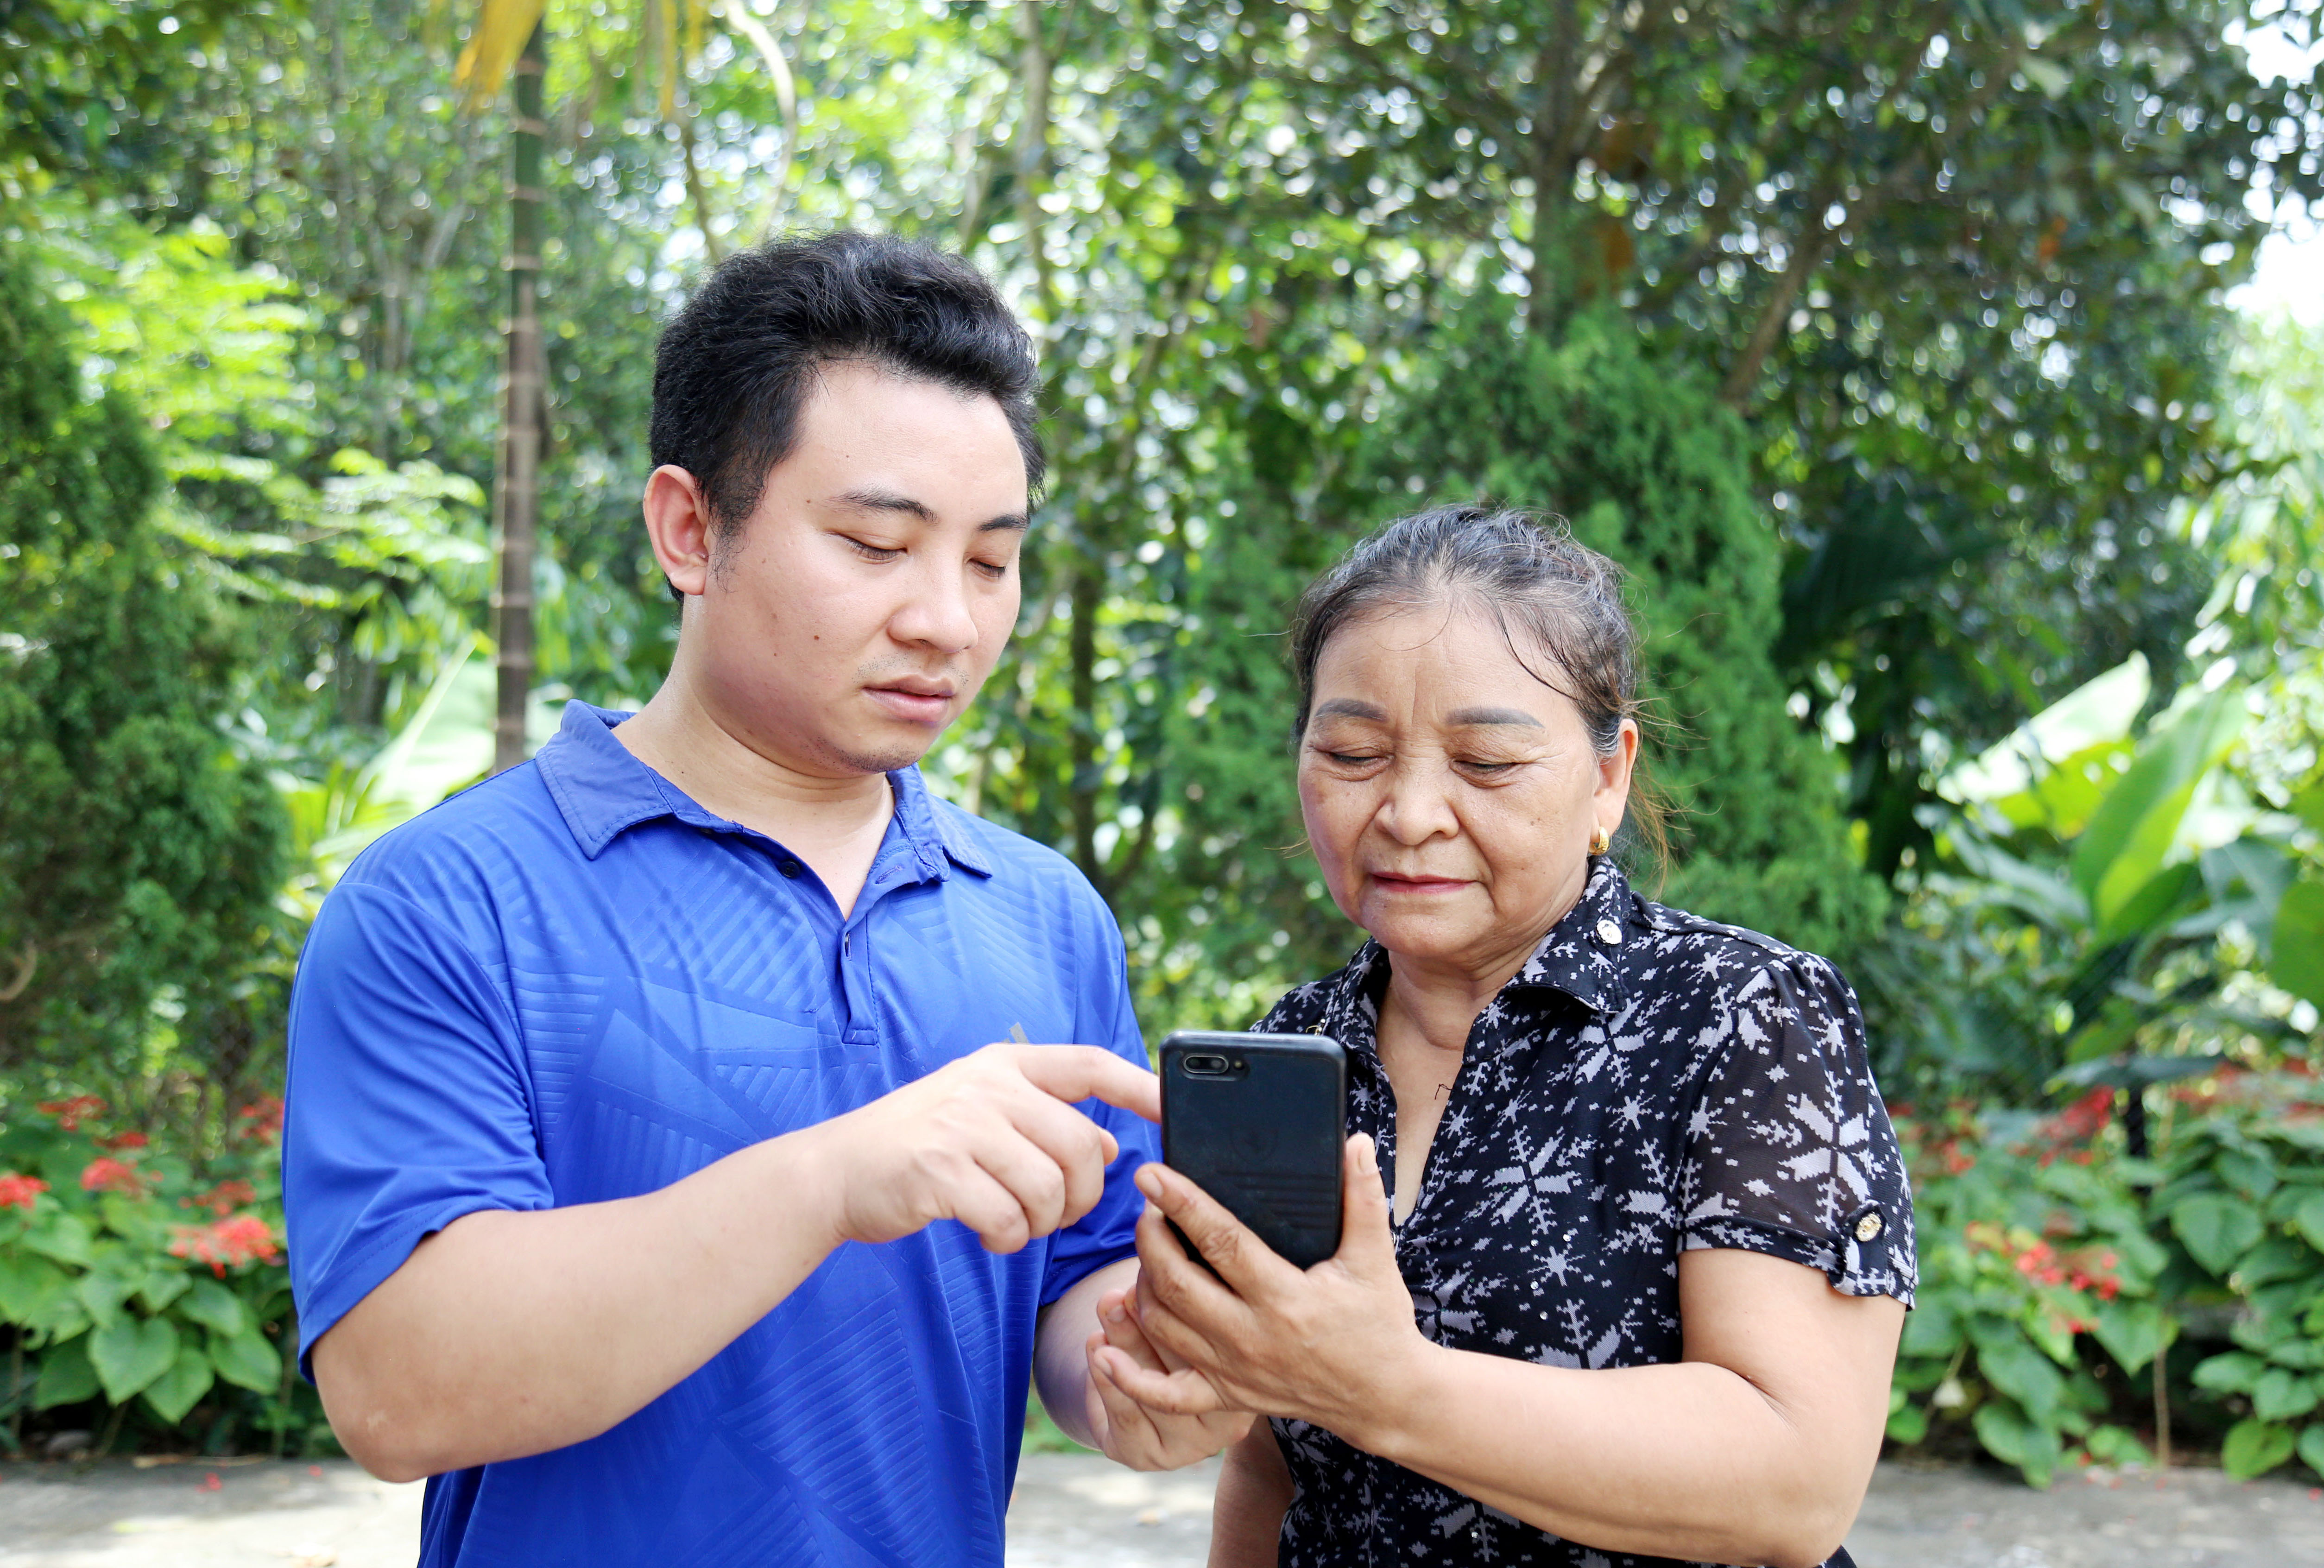 Thành viên Tổ Công nghệ số cộng đồng thôn Tả Hà hướng dẫn người cao tuổi thực hiện các bước đăng ký thủ tục hành chính trên điện thoại thông minh.